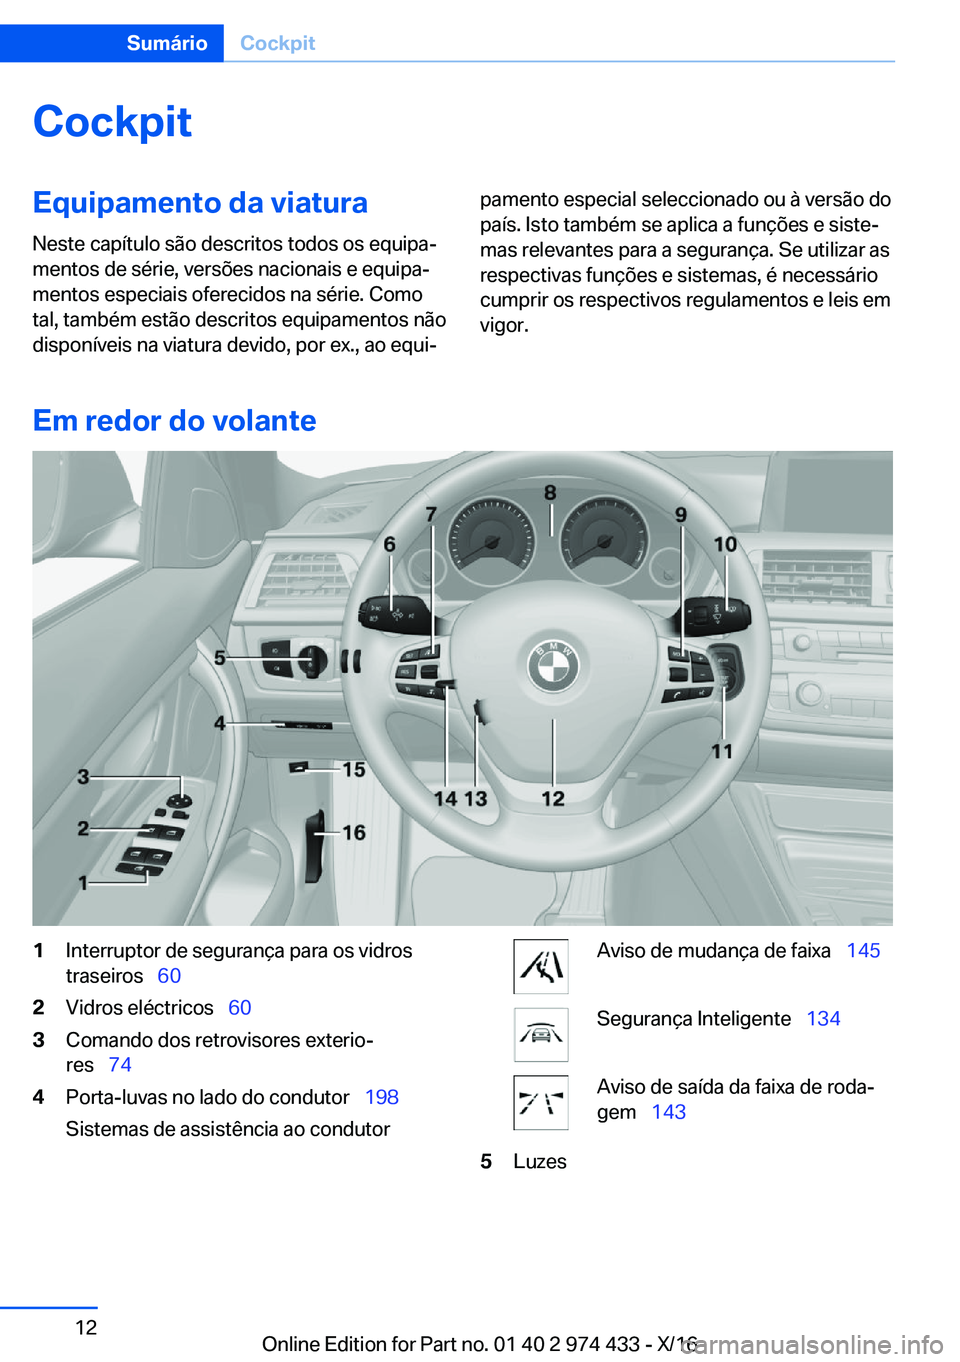 BMW 4 SERIES GRAN COUPE 2017  Manual do condutor (in Portuguese) �C�o�c�k�p�i�t�E�q�u�i�p�a�m�e�n�t�o��d�a��v�i�a�t�u�r�a
�N�e�s�t�e� �c�a�p�